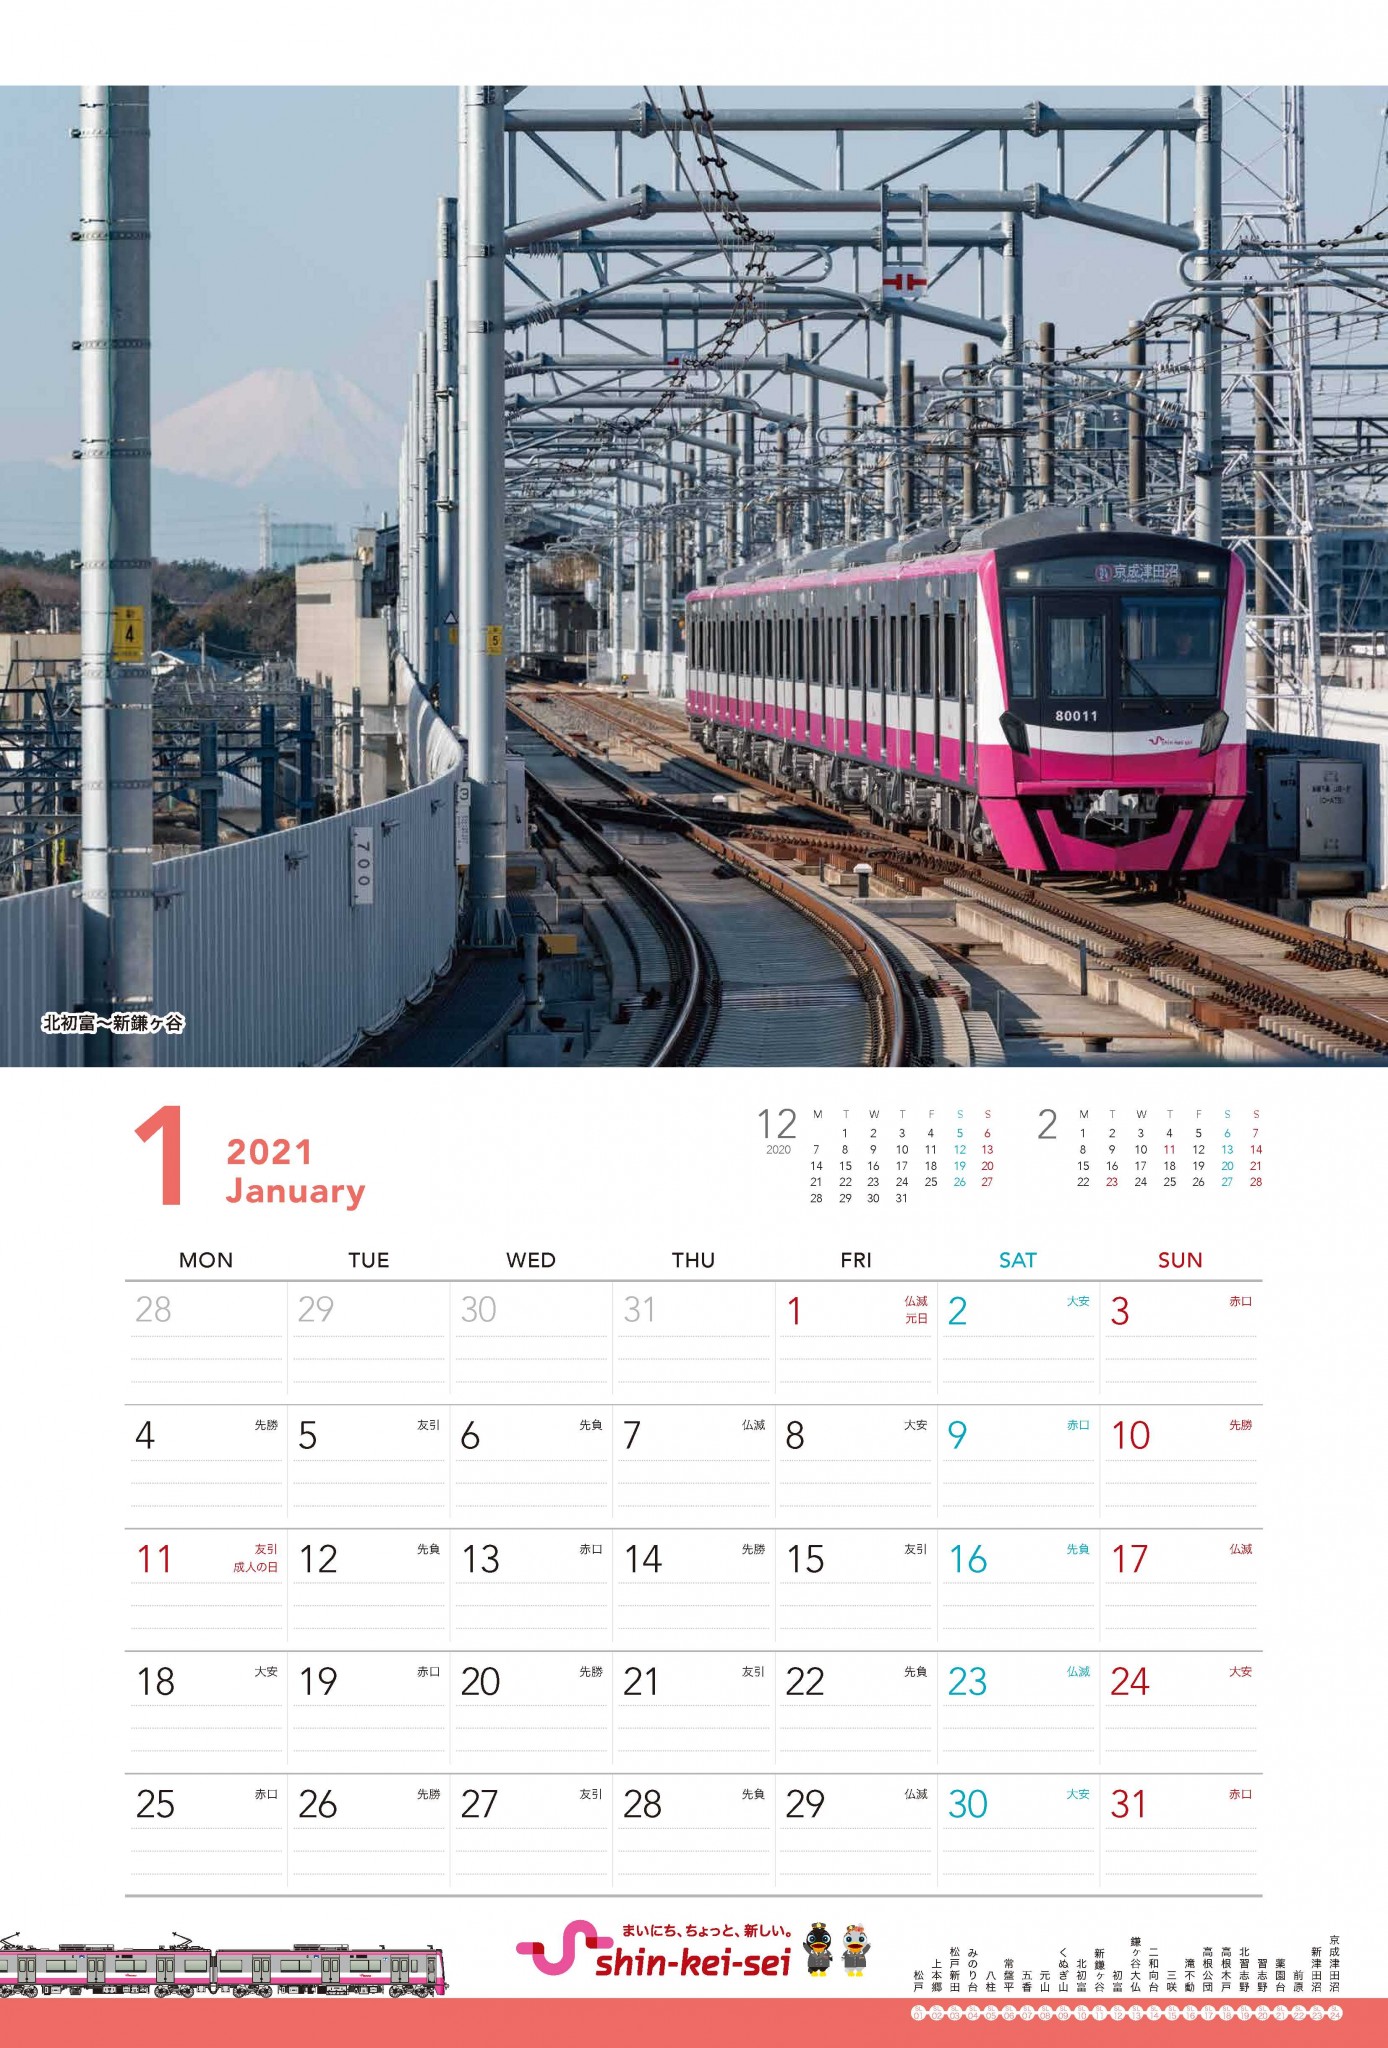 新京成カレンダー21 を発売 10 1 新京成電鉄株式会社